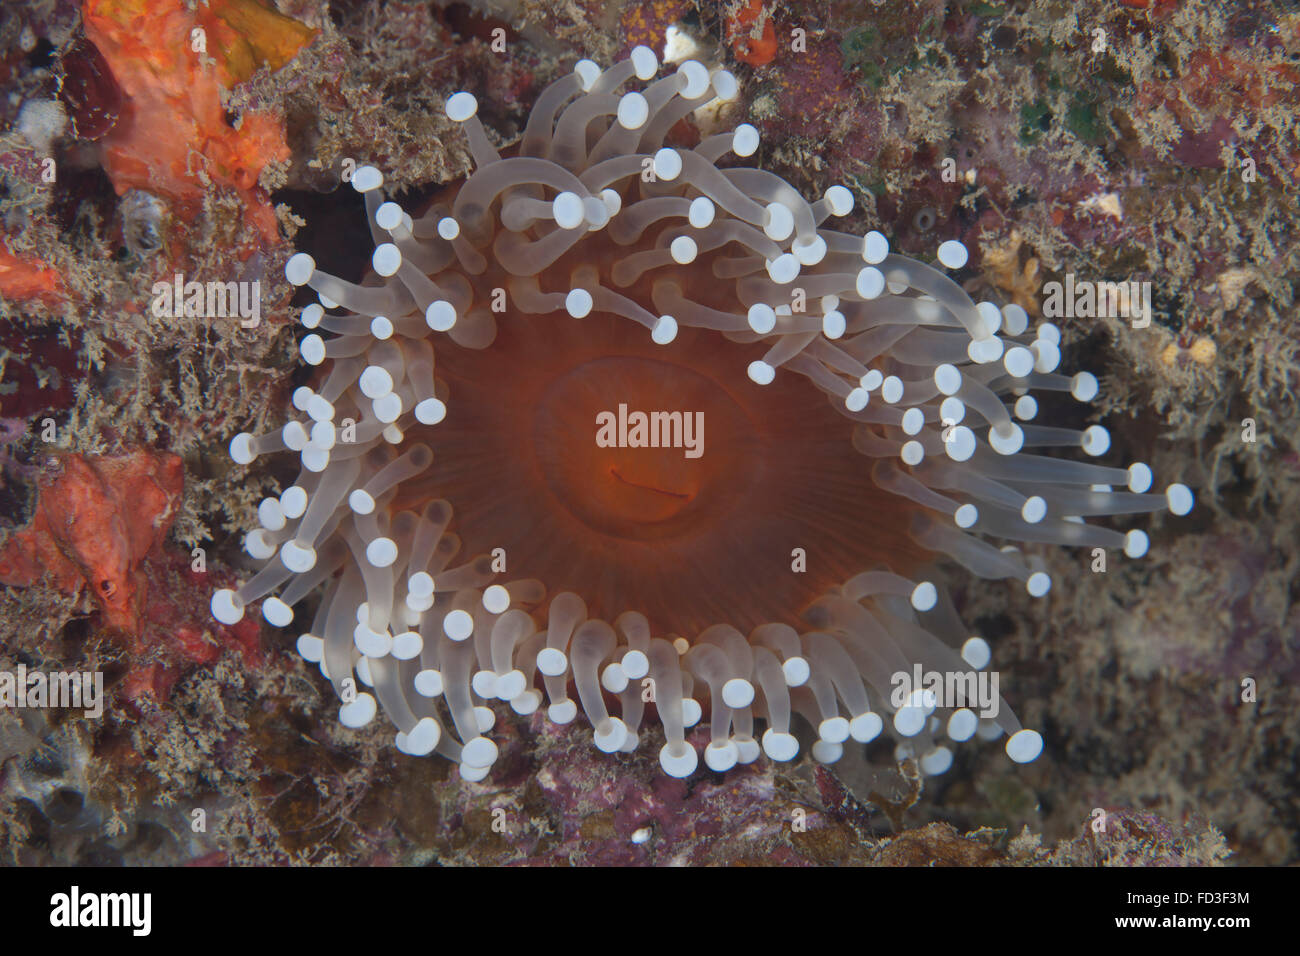 Anemone di mare nella laguna di Beqa reef, Fiji. Foto Stock